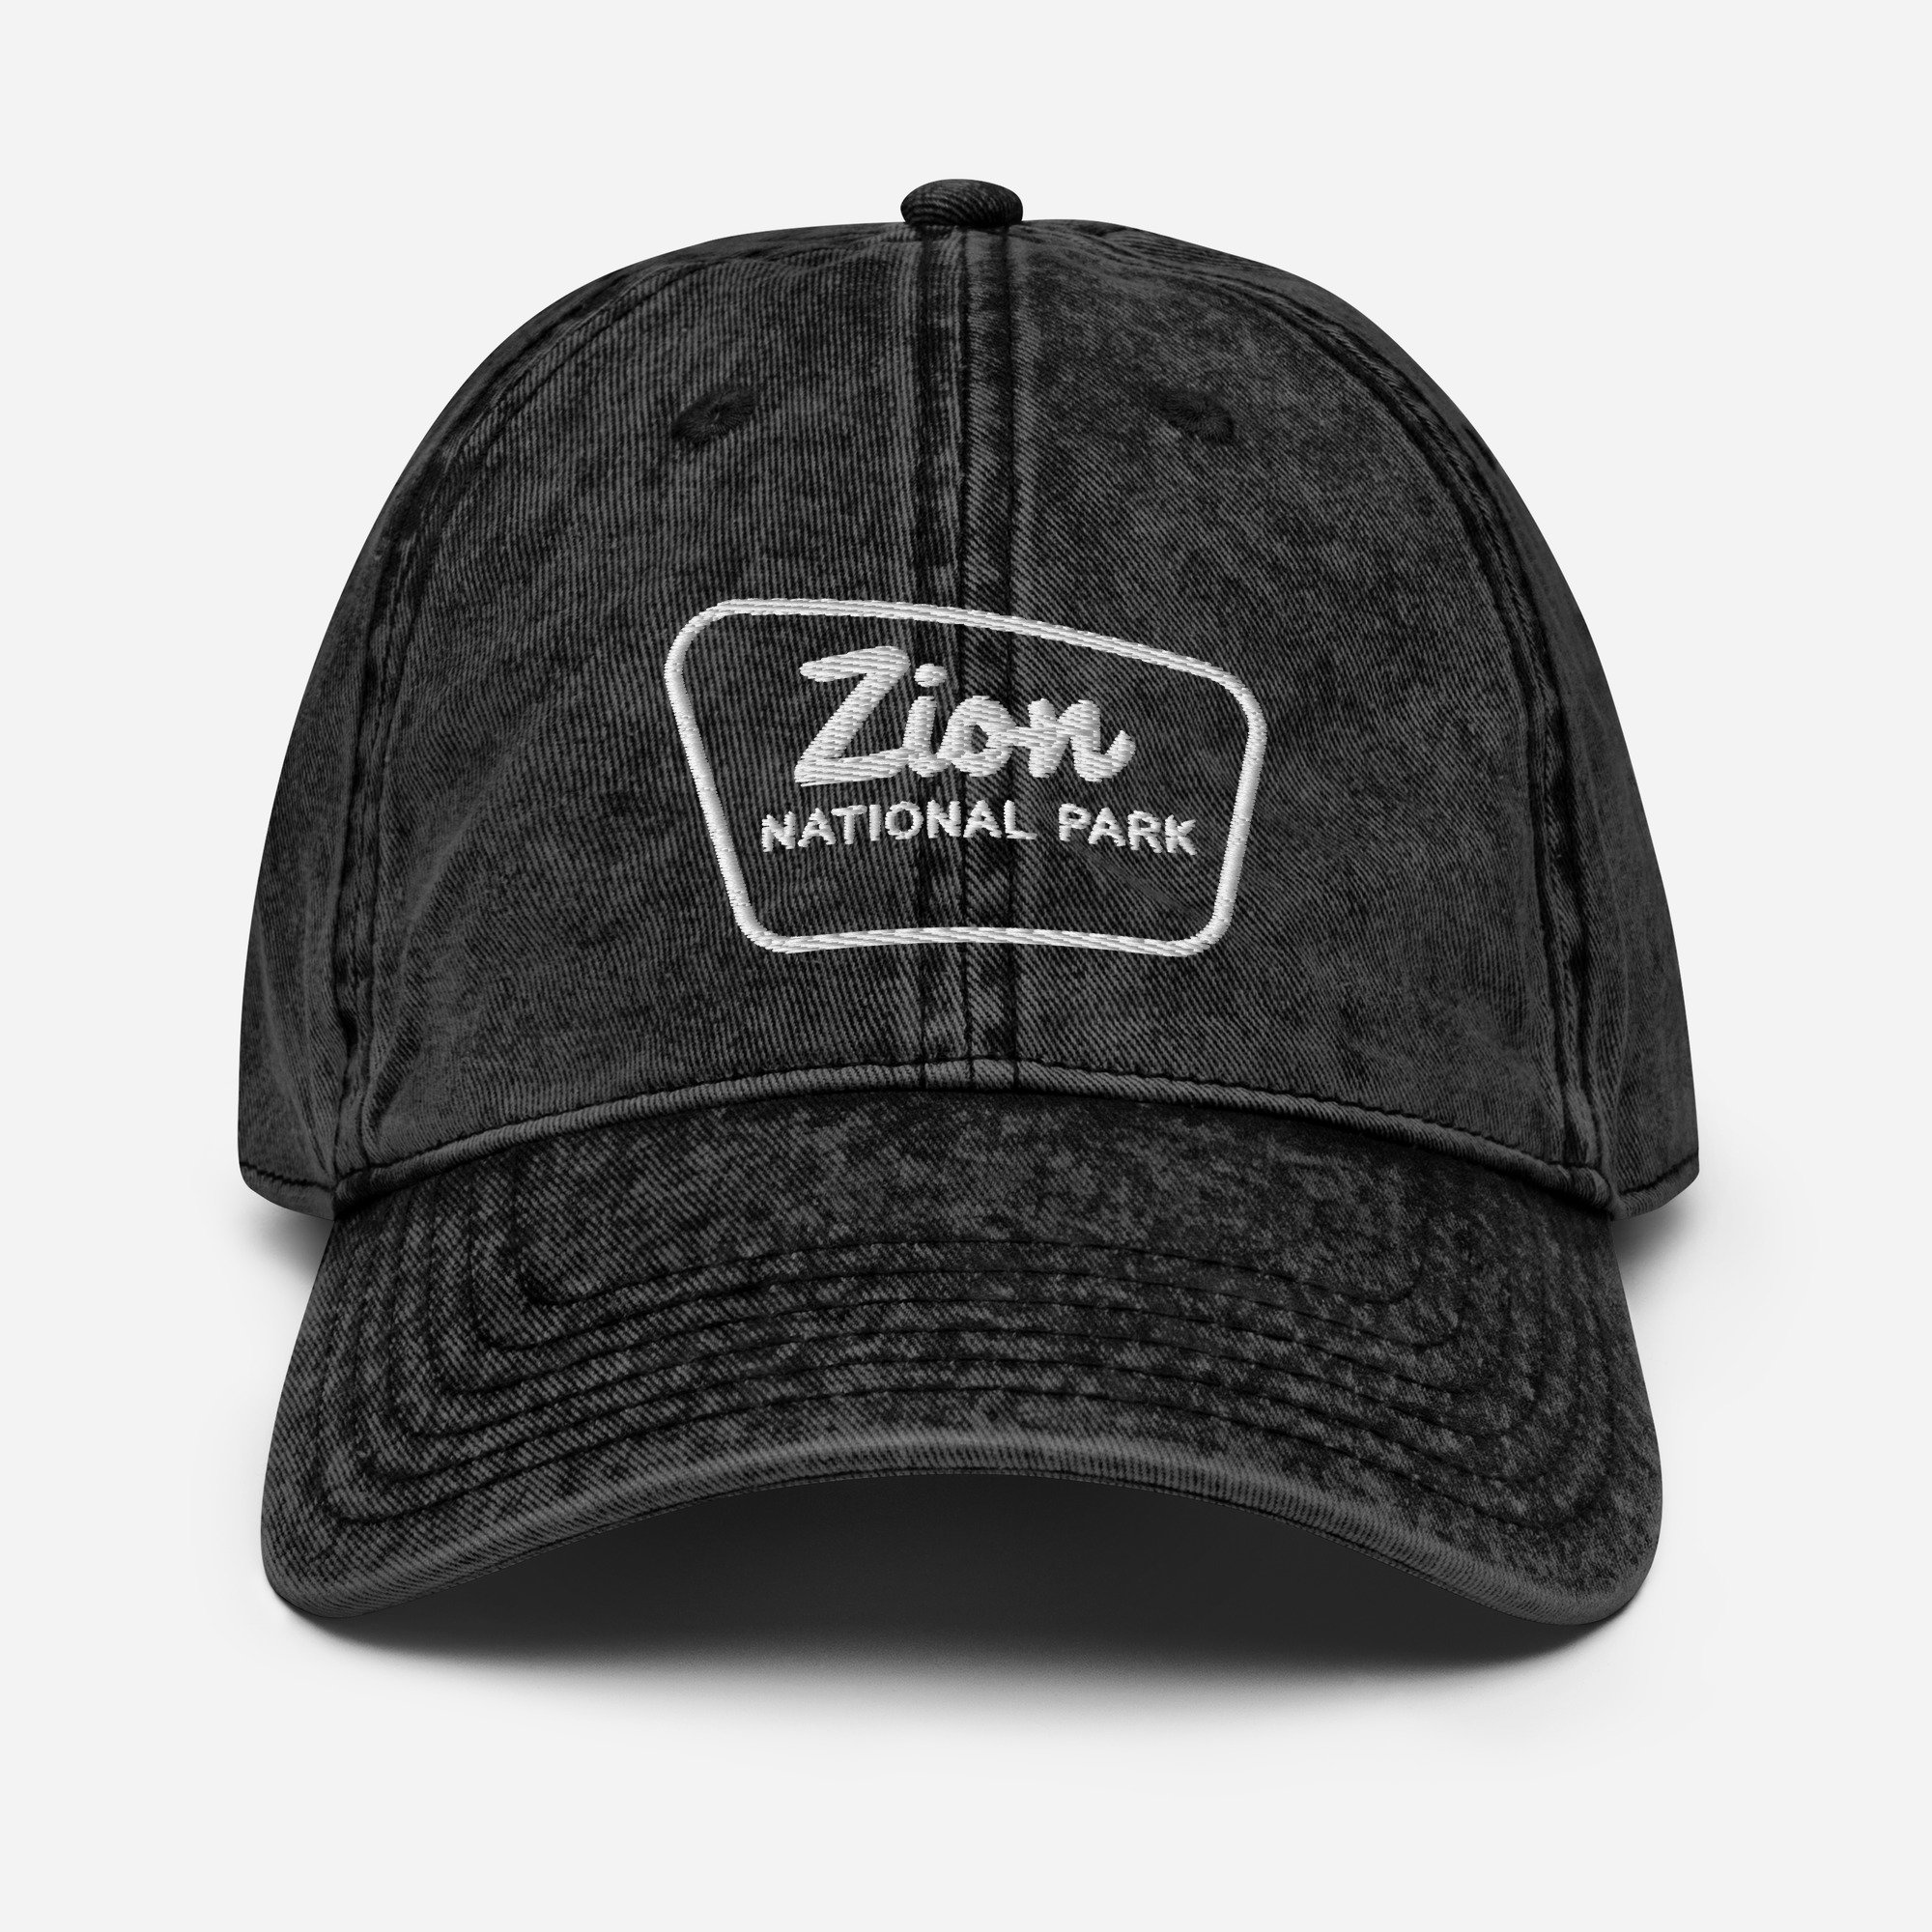 ZION NATIONAL PARK High Crown Trucker Hat - Grey (Curved Brim)